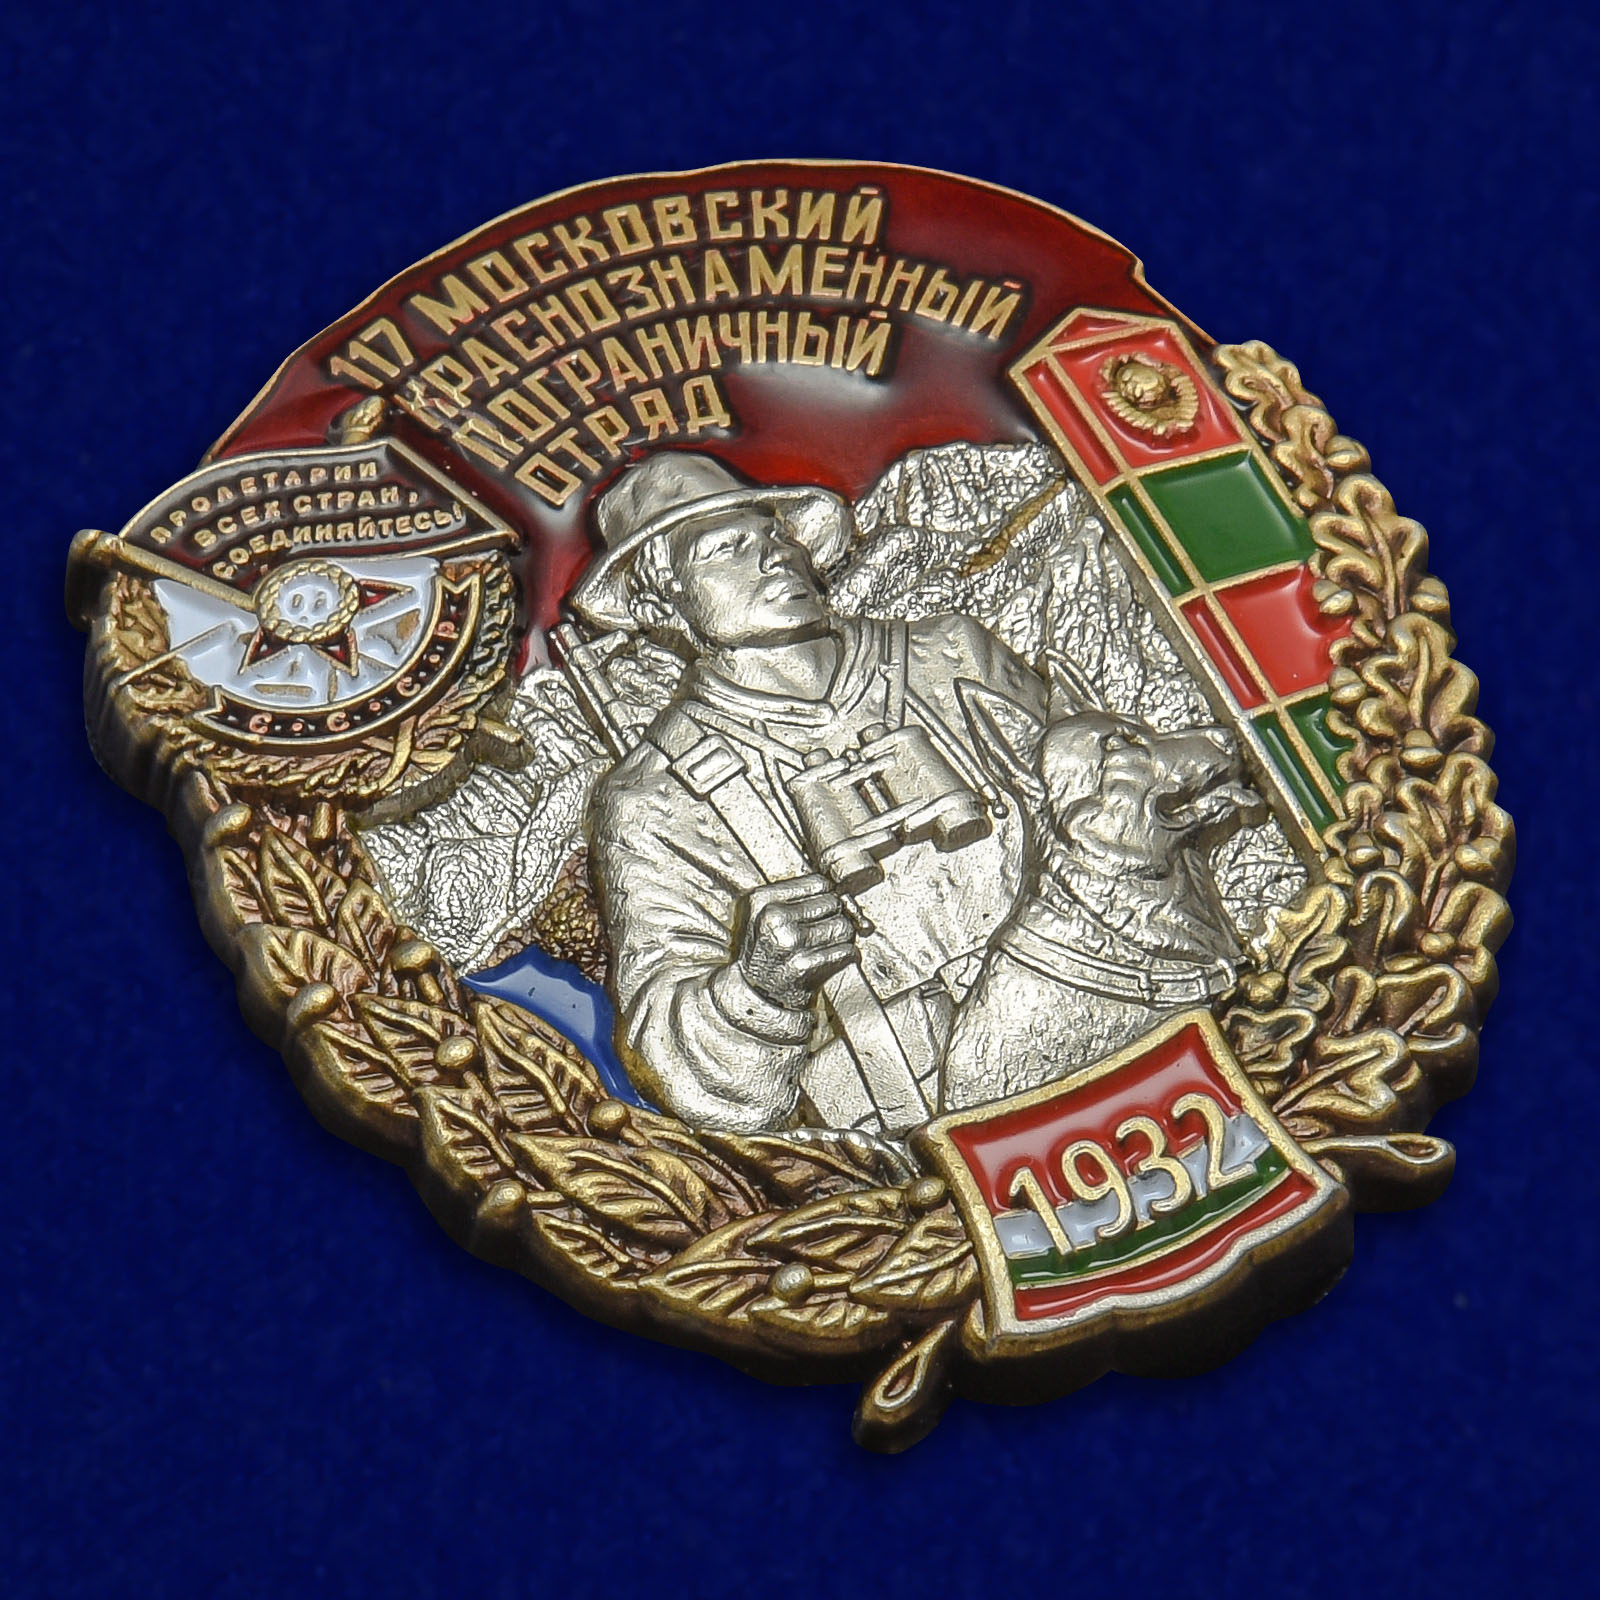 Наградной знак "117 Московский Краснознамённый Пограничный отряд" 